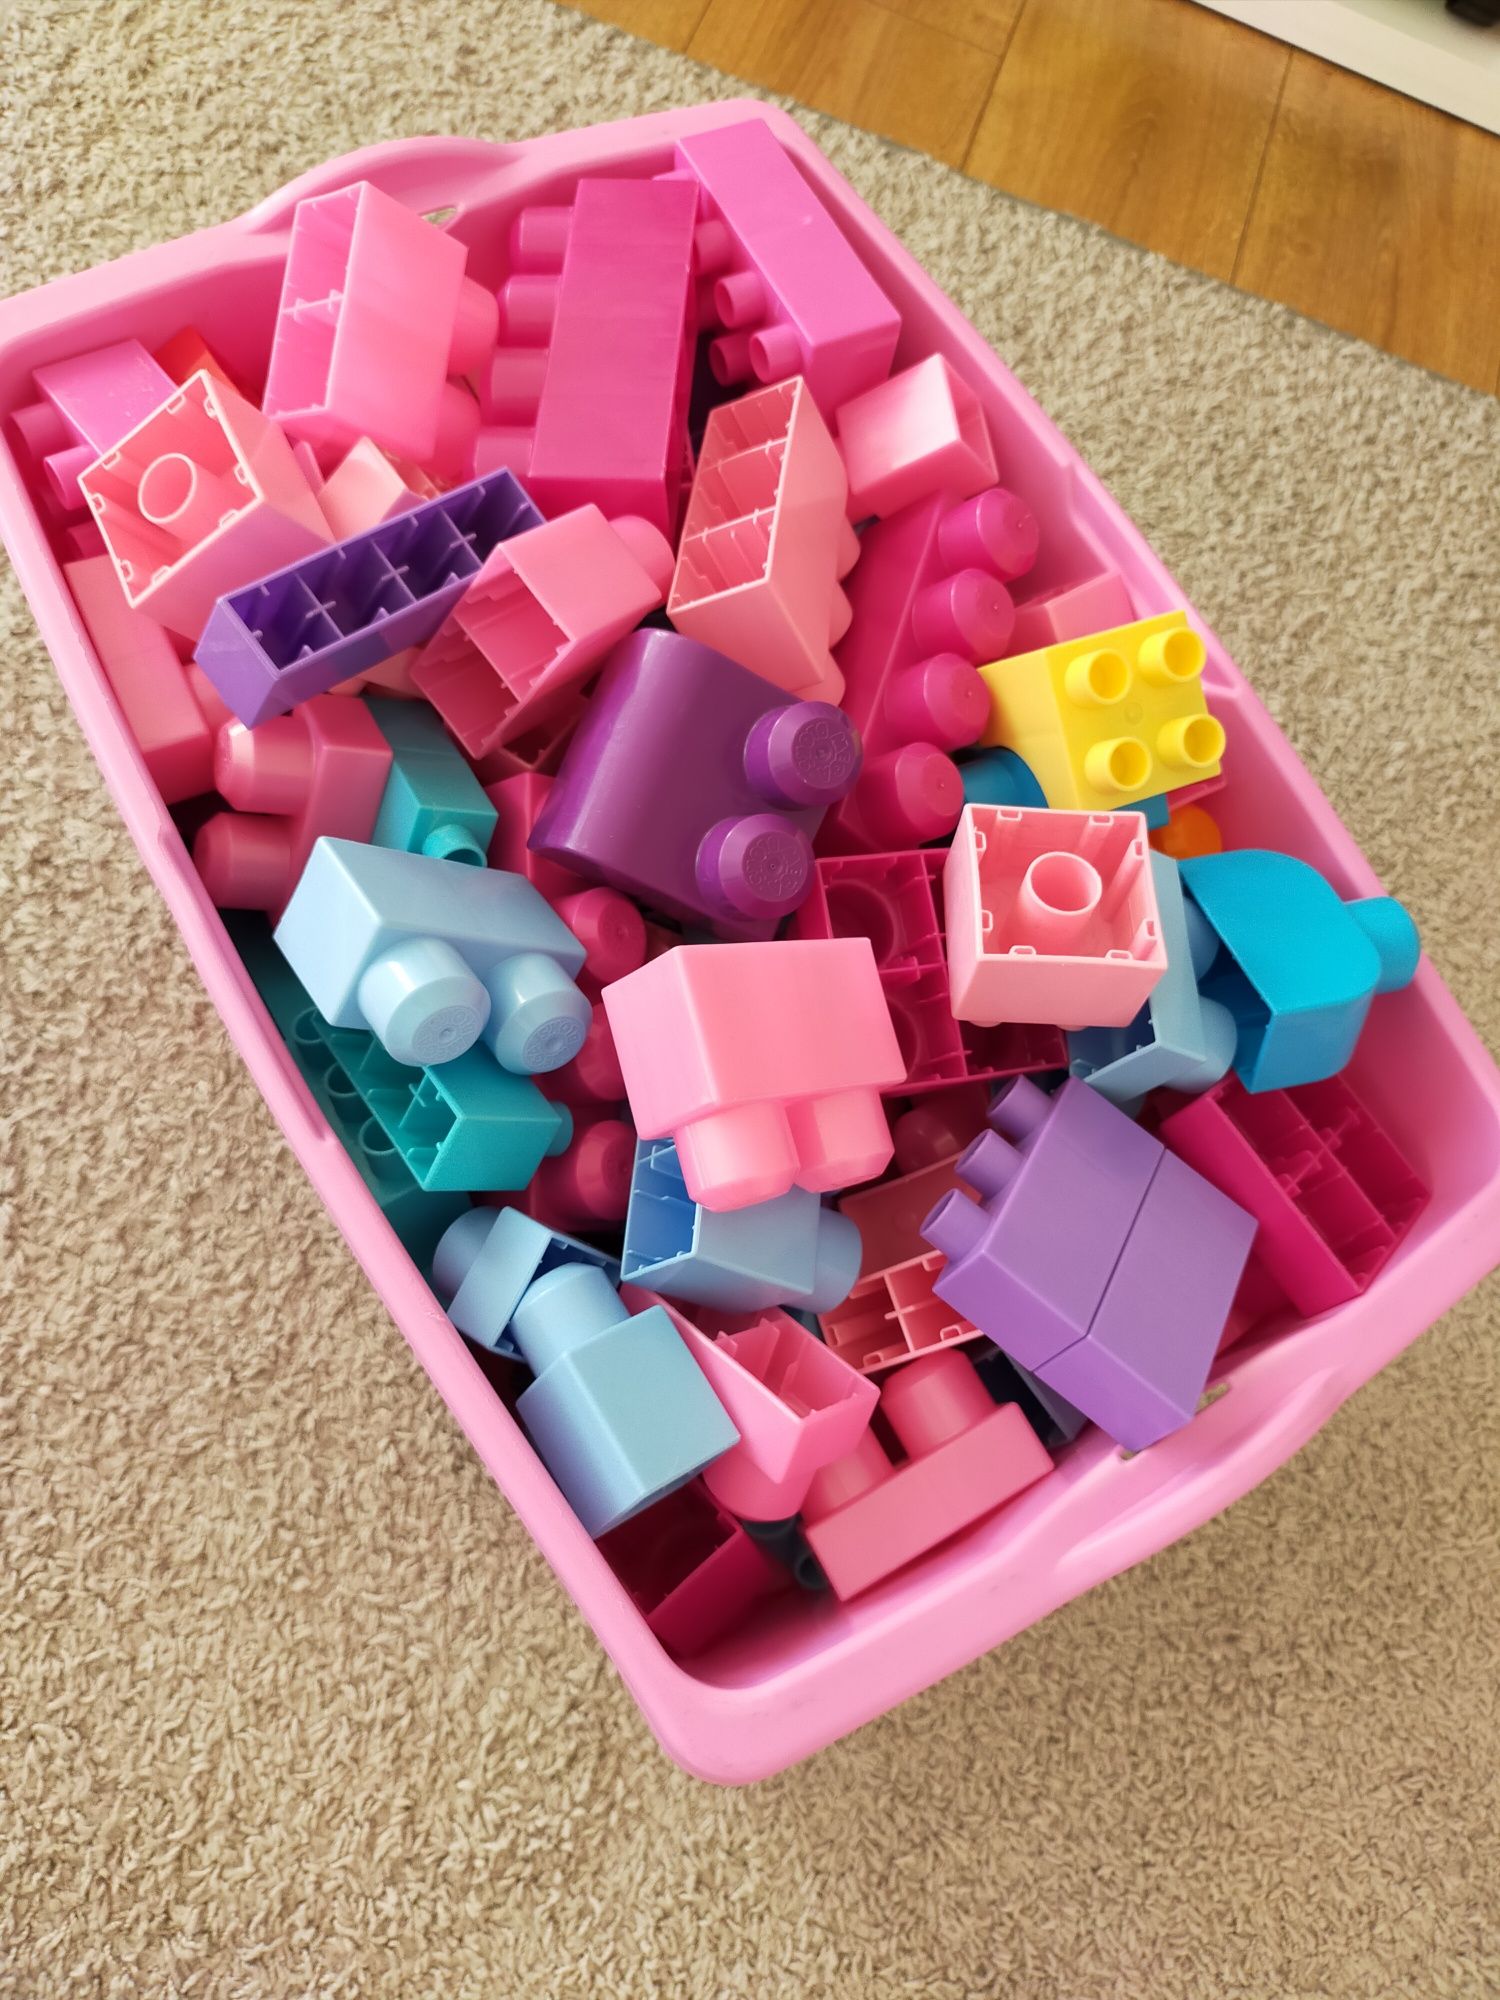 Duże pudło na kółkach Mega Bloks kuchnia klocki dla dziewczynki dziec